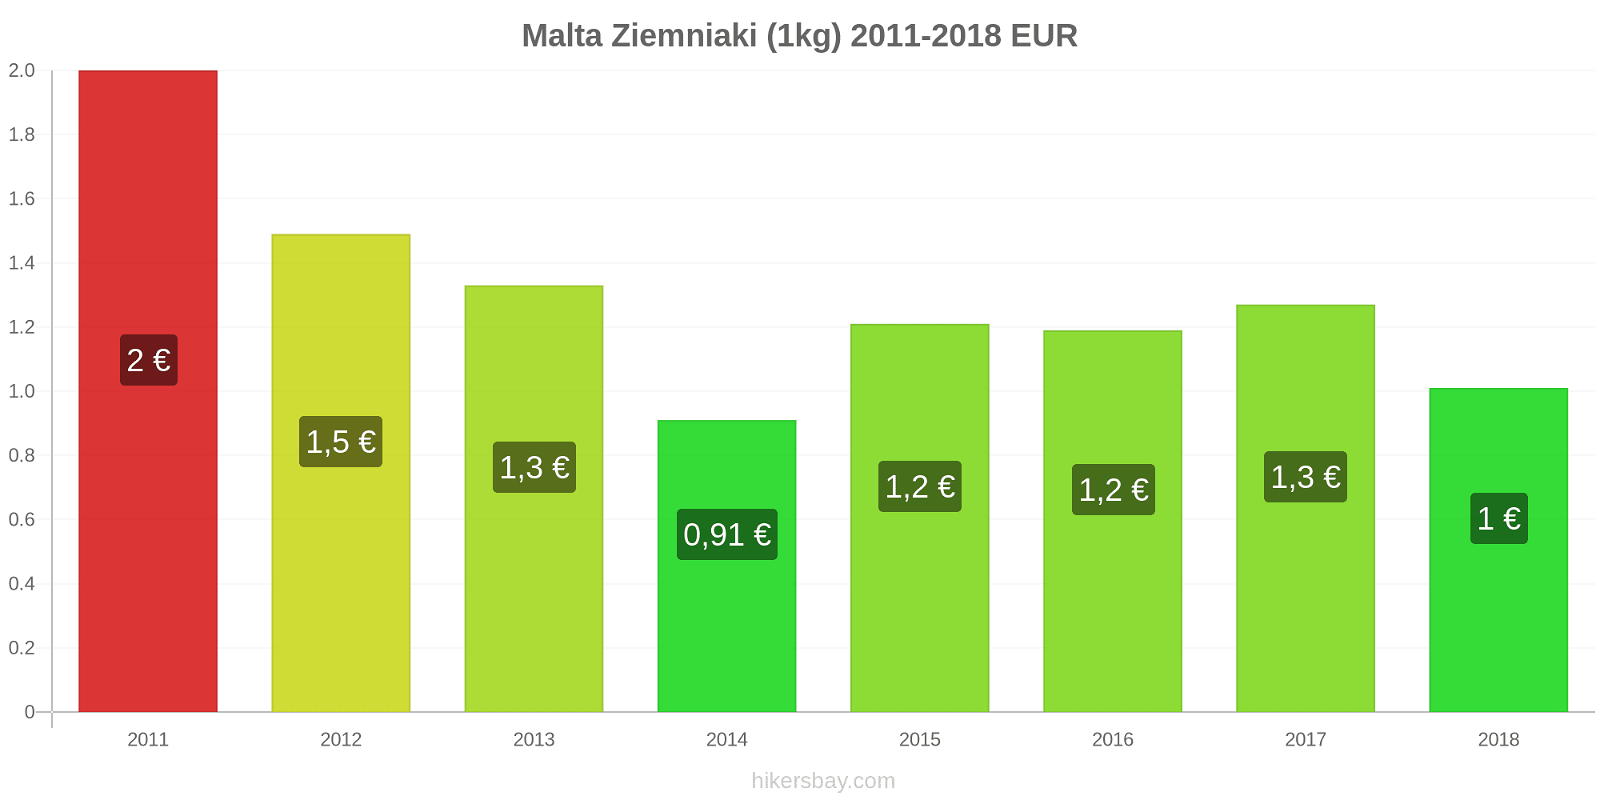 Malta zmiany cen Ziemniaki (1kg) hikersbay.com